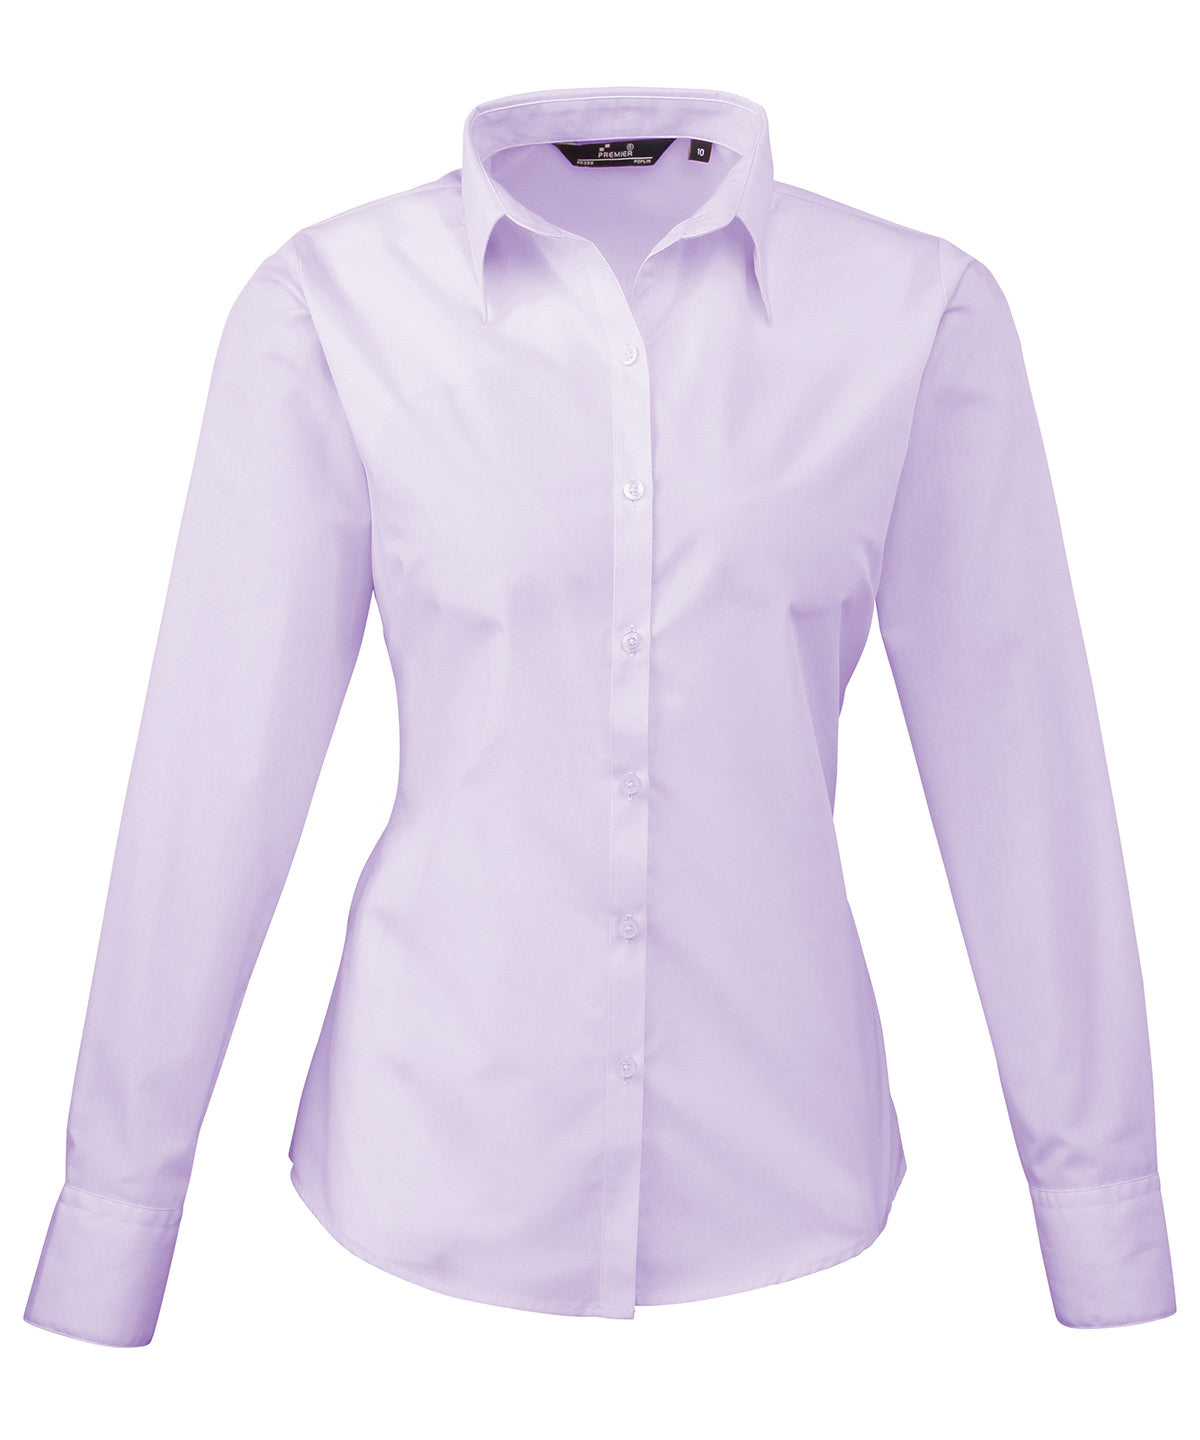 Premier Ladies Long Sleeve Poplin Blouse (PR300) Optional Colors - COOZO